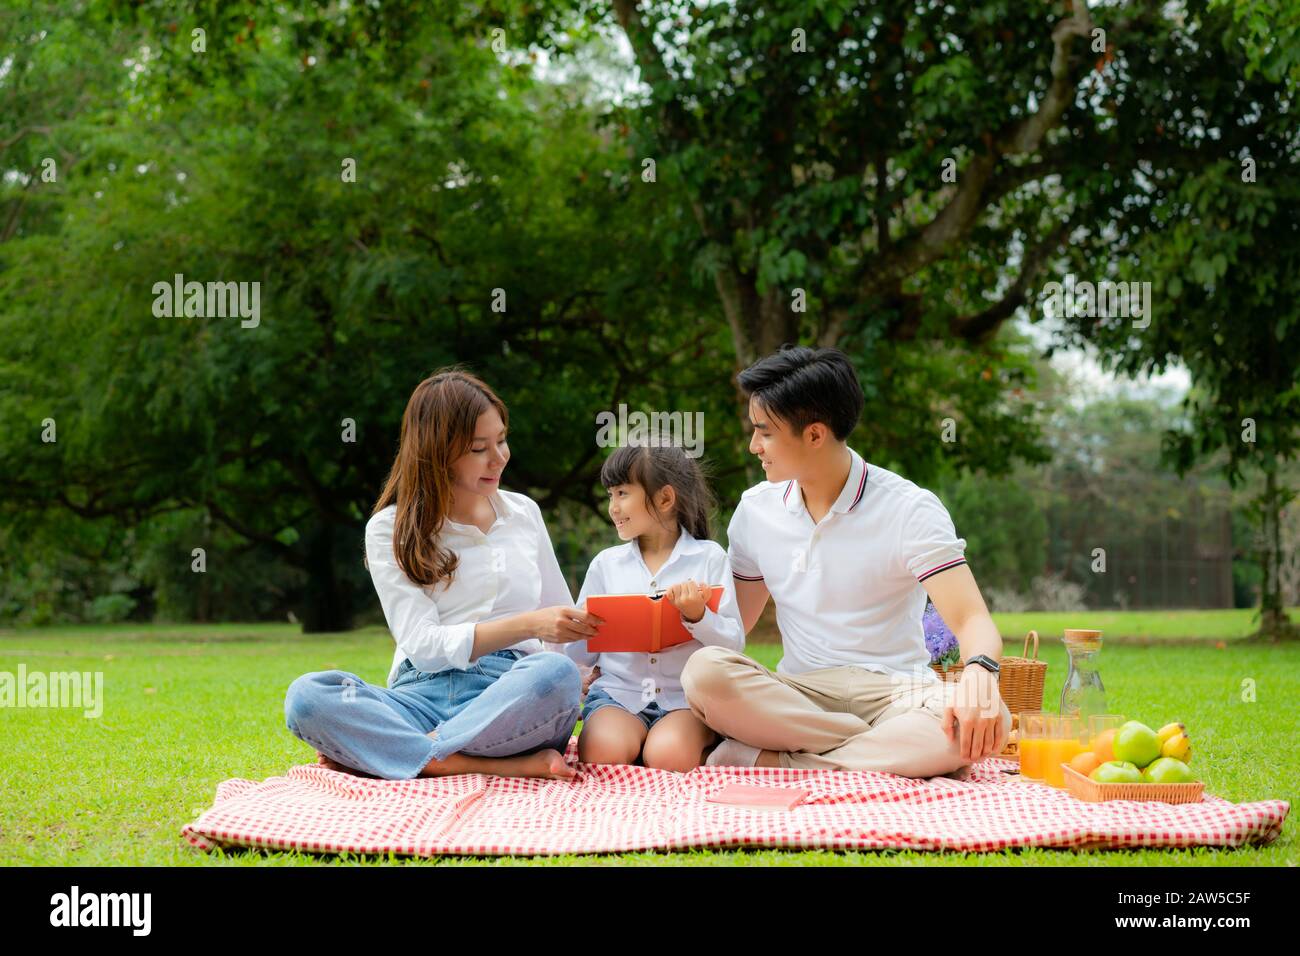 Asiatische Teenager Familie fröhlicher Urlaub Picknick-Moment im Park mit Vater, Mutter und Tochter Lesen Buch und Lächeln zu verbringen Urlaub glücklich zusammen Stockfoto